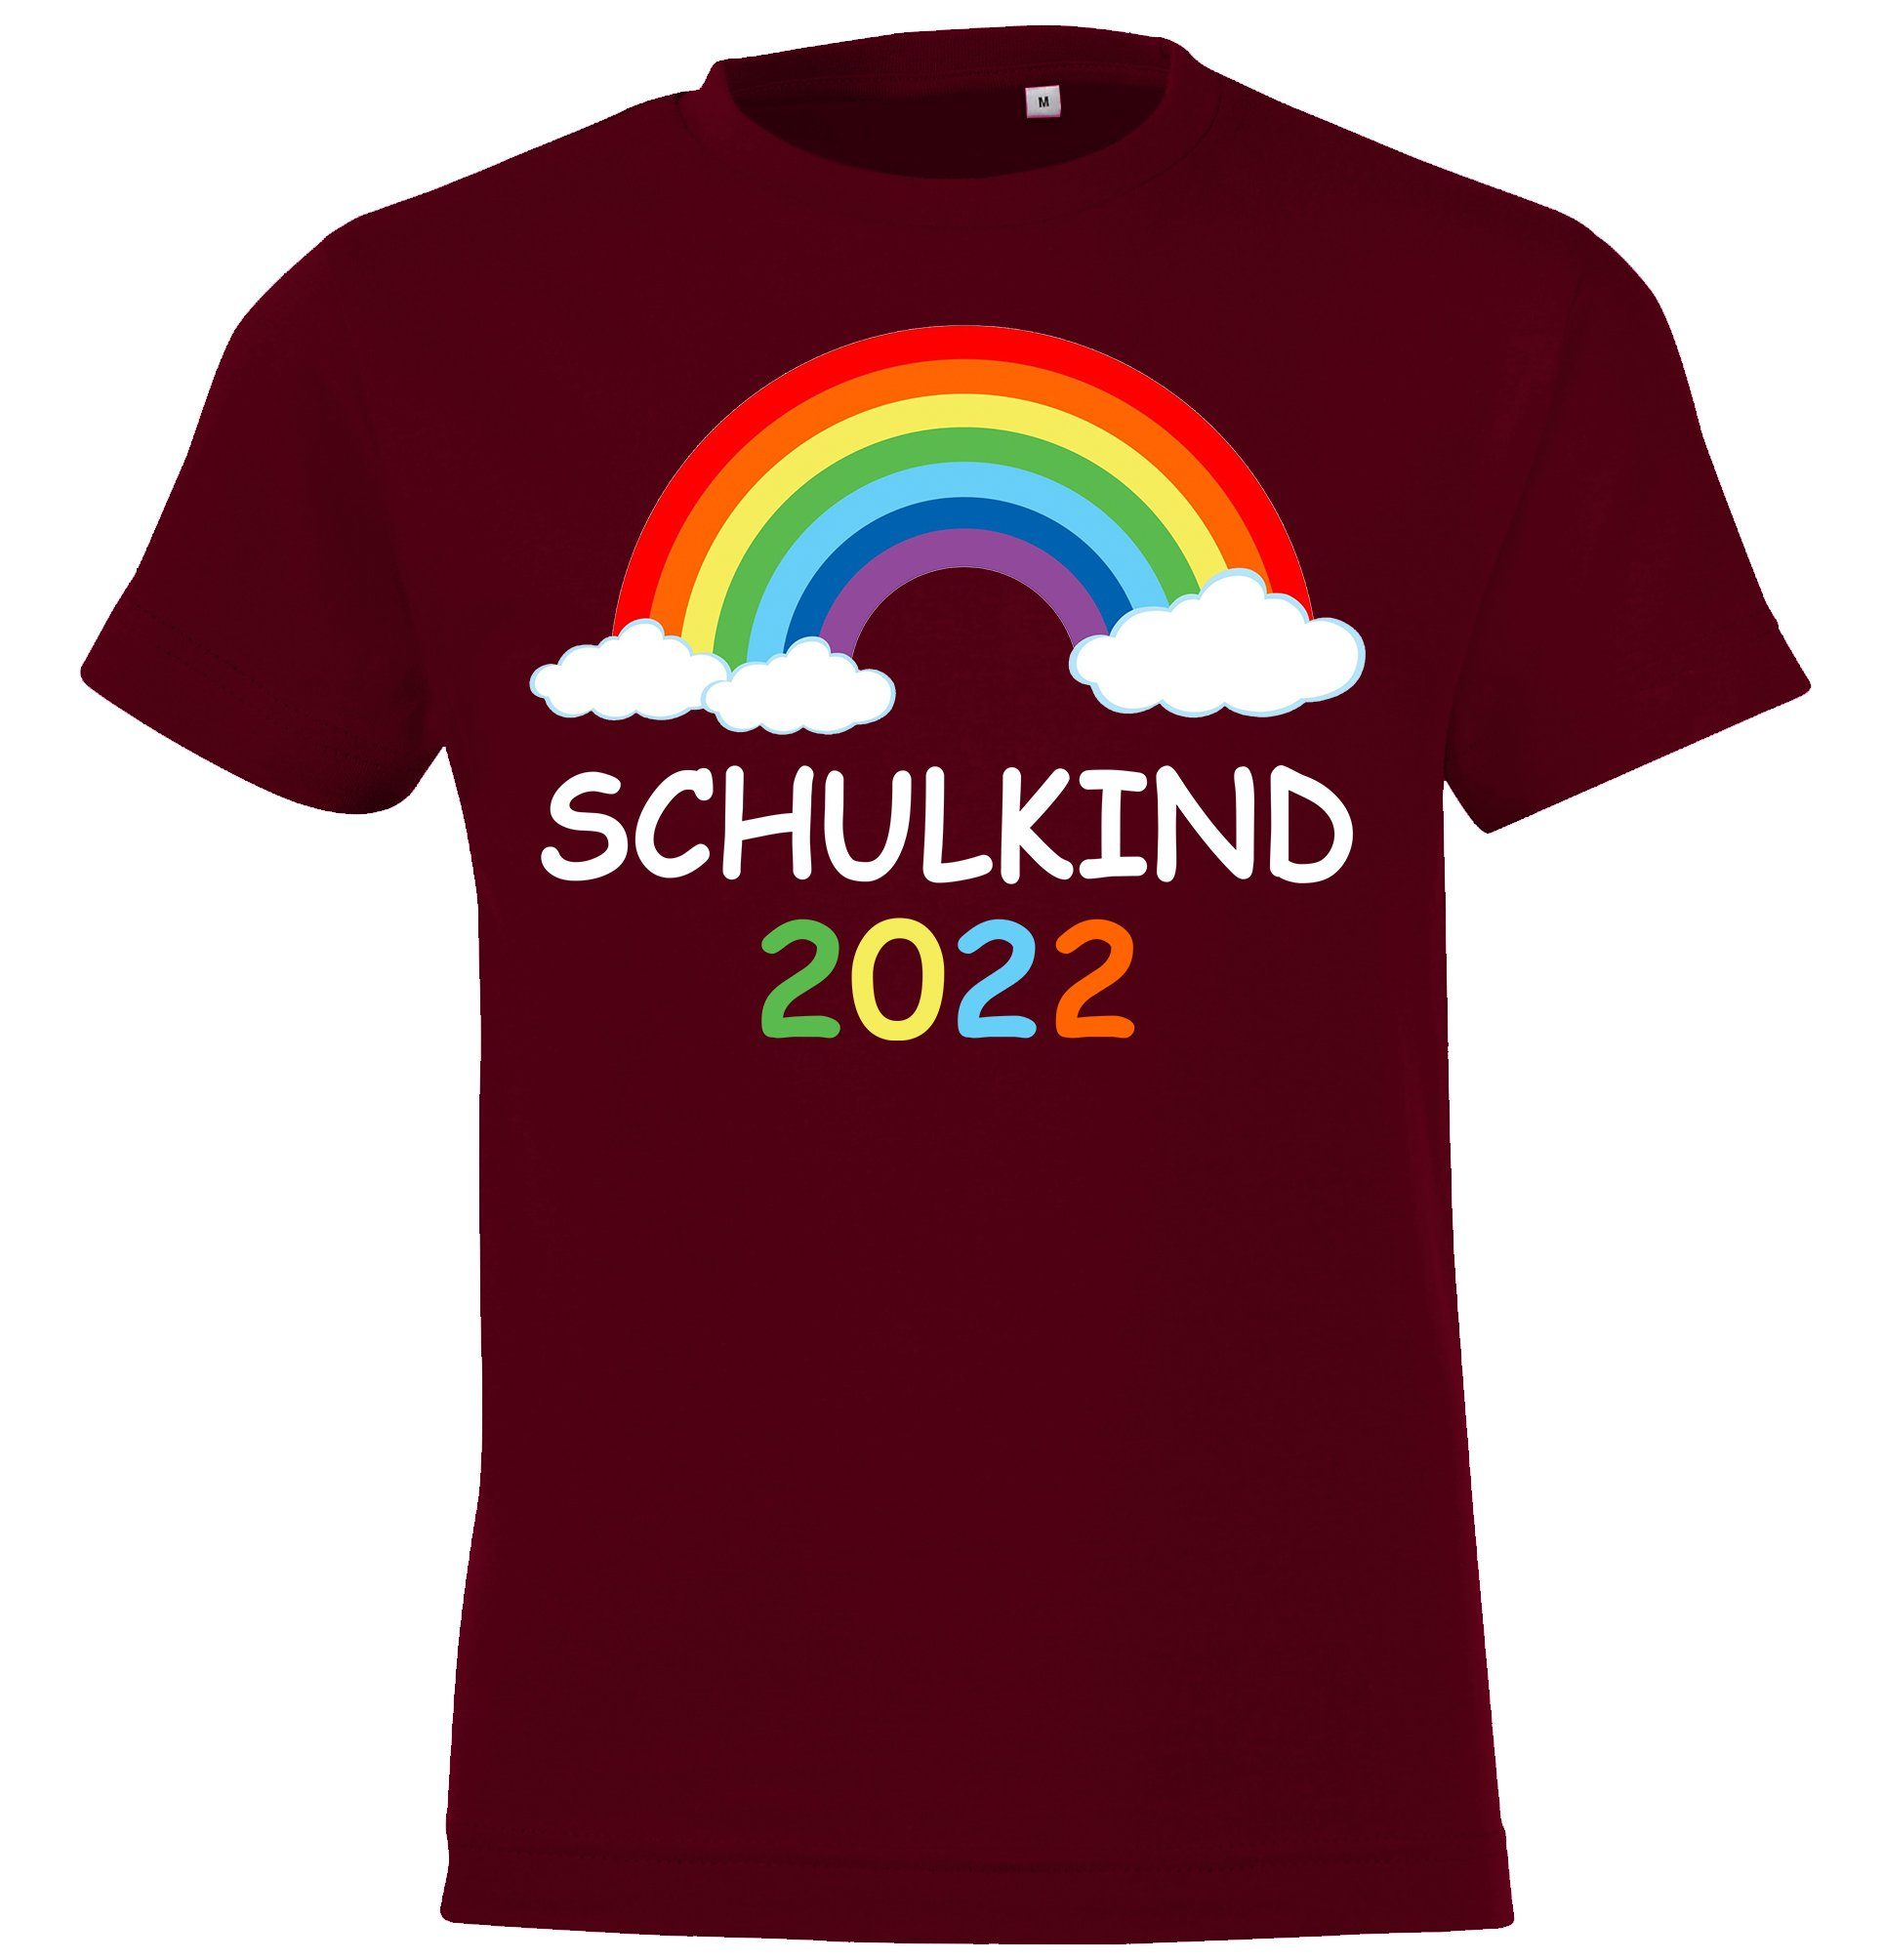 Youth Designz T-Shirt Schulkind 2022 Kinder Shirt mit süßem Regenbogen Frontaufdruck Burgund